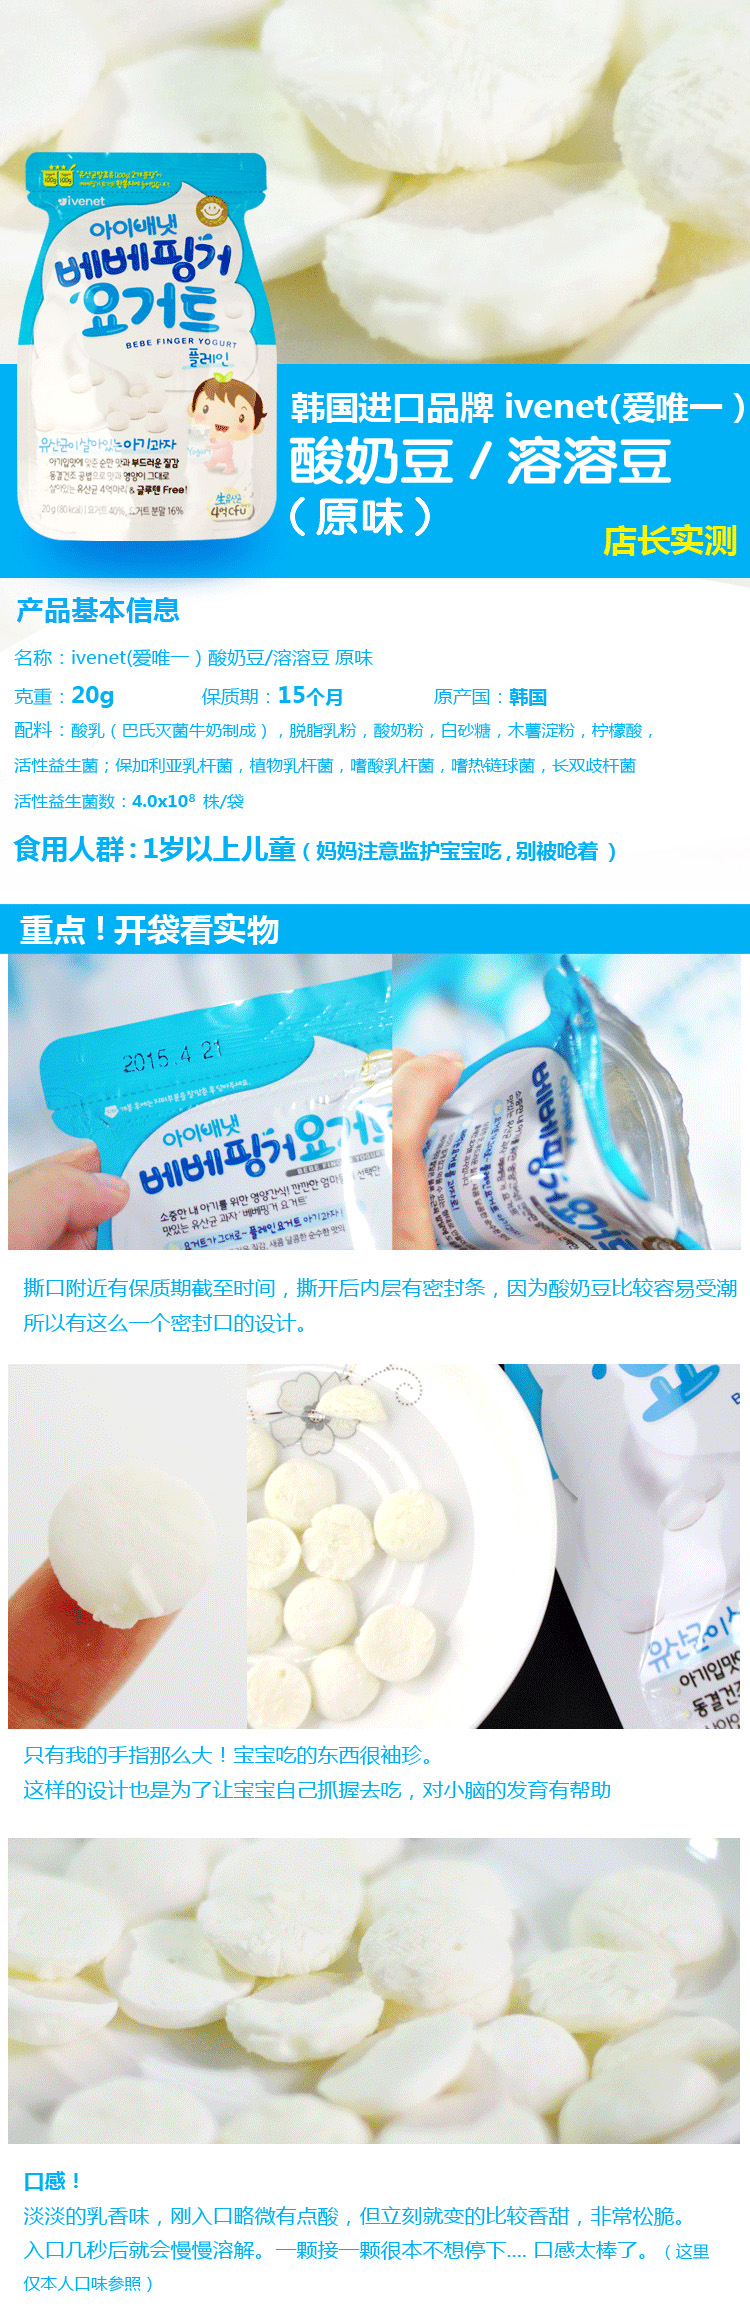 爱唯一ivenet韩国酸奶溶溶豆（芒果）,产品编号39306